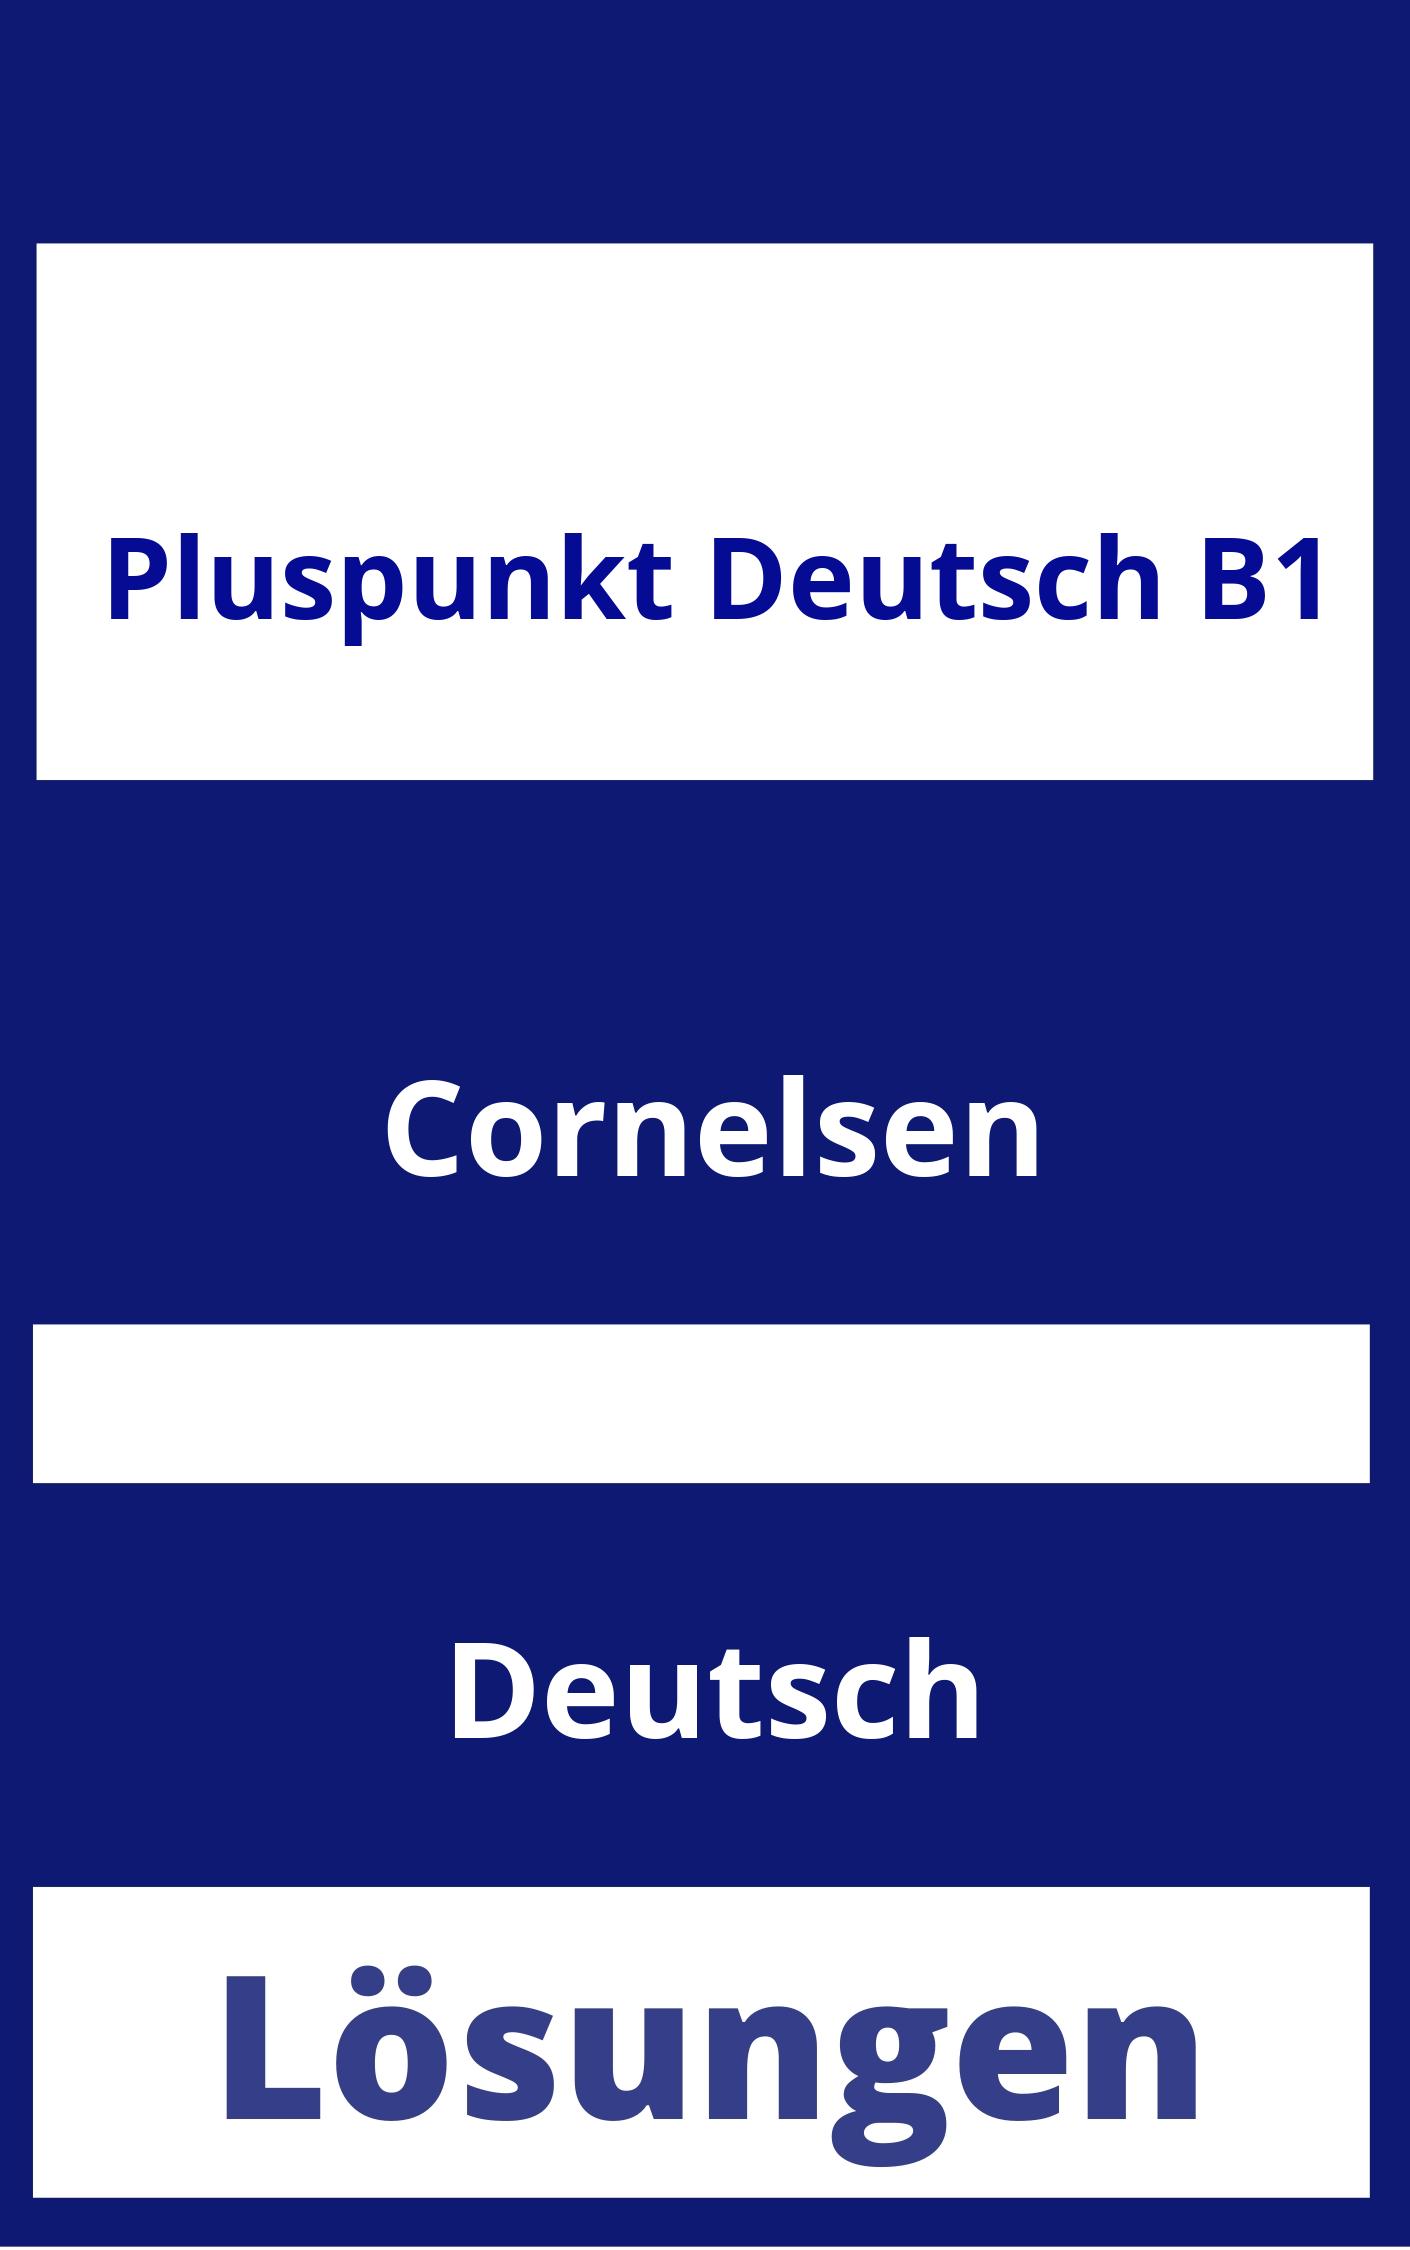 Pluspunkt Deutsch B1 Lösungen PDF